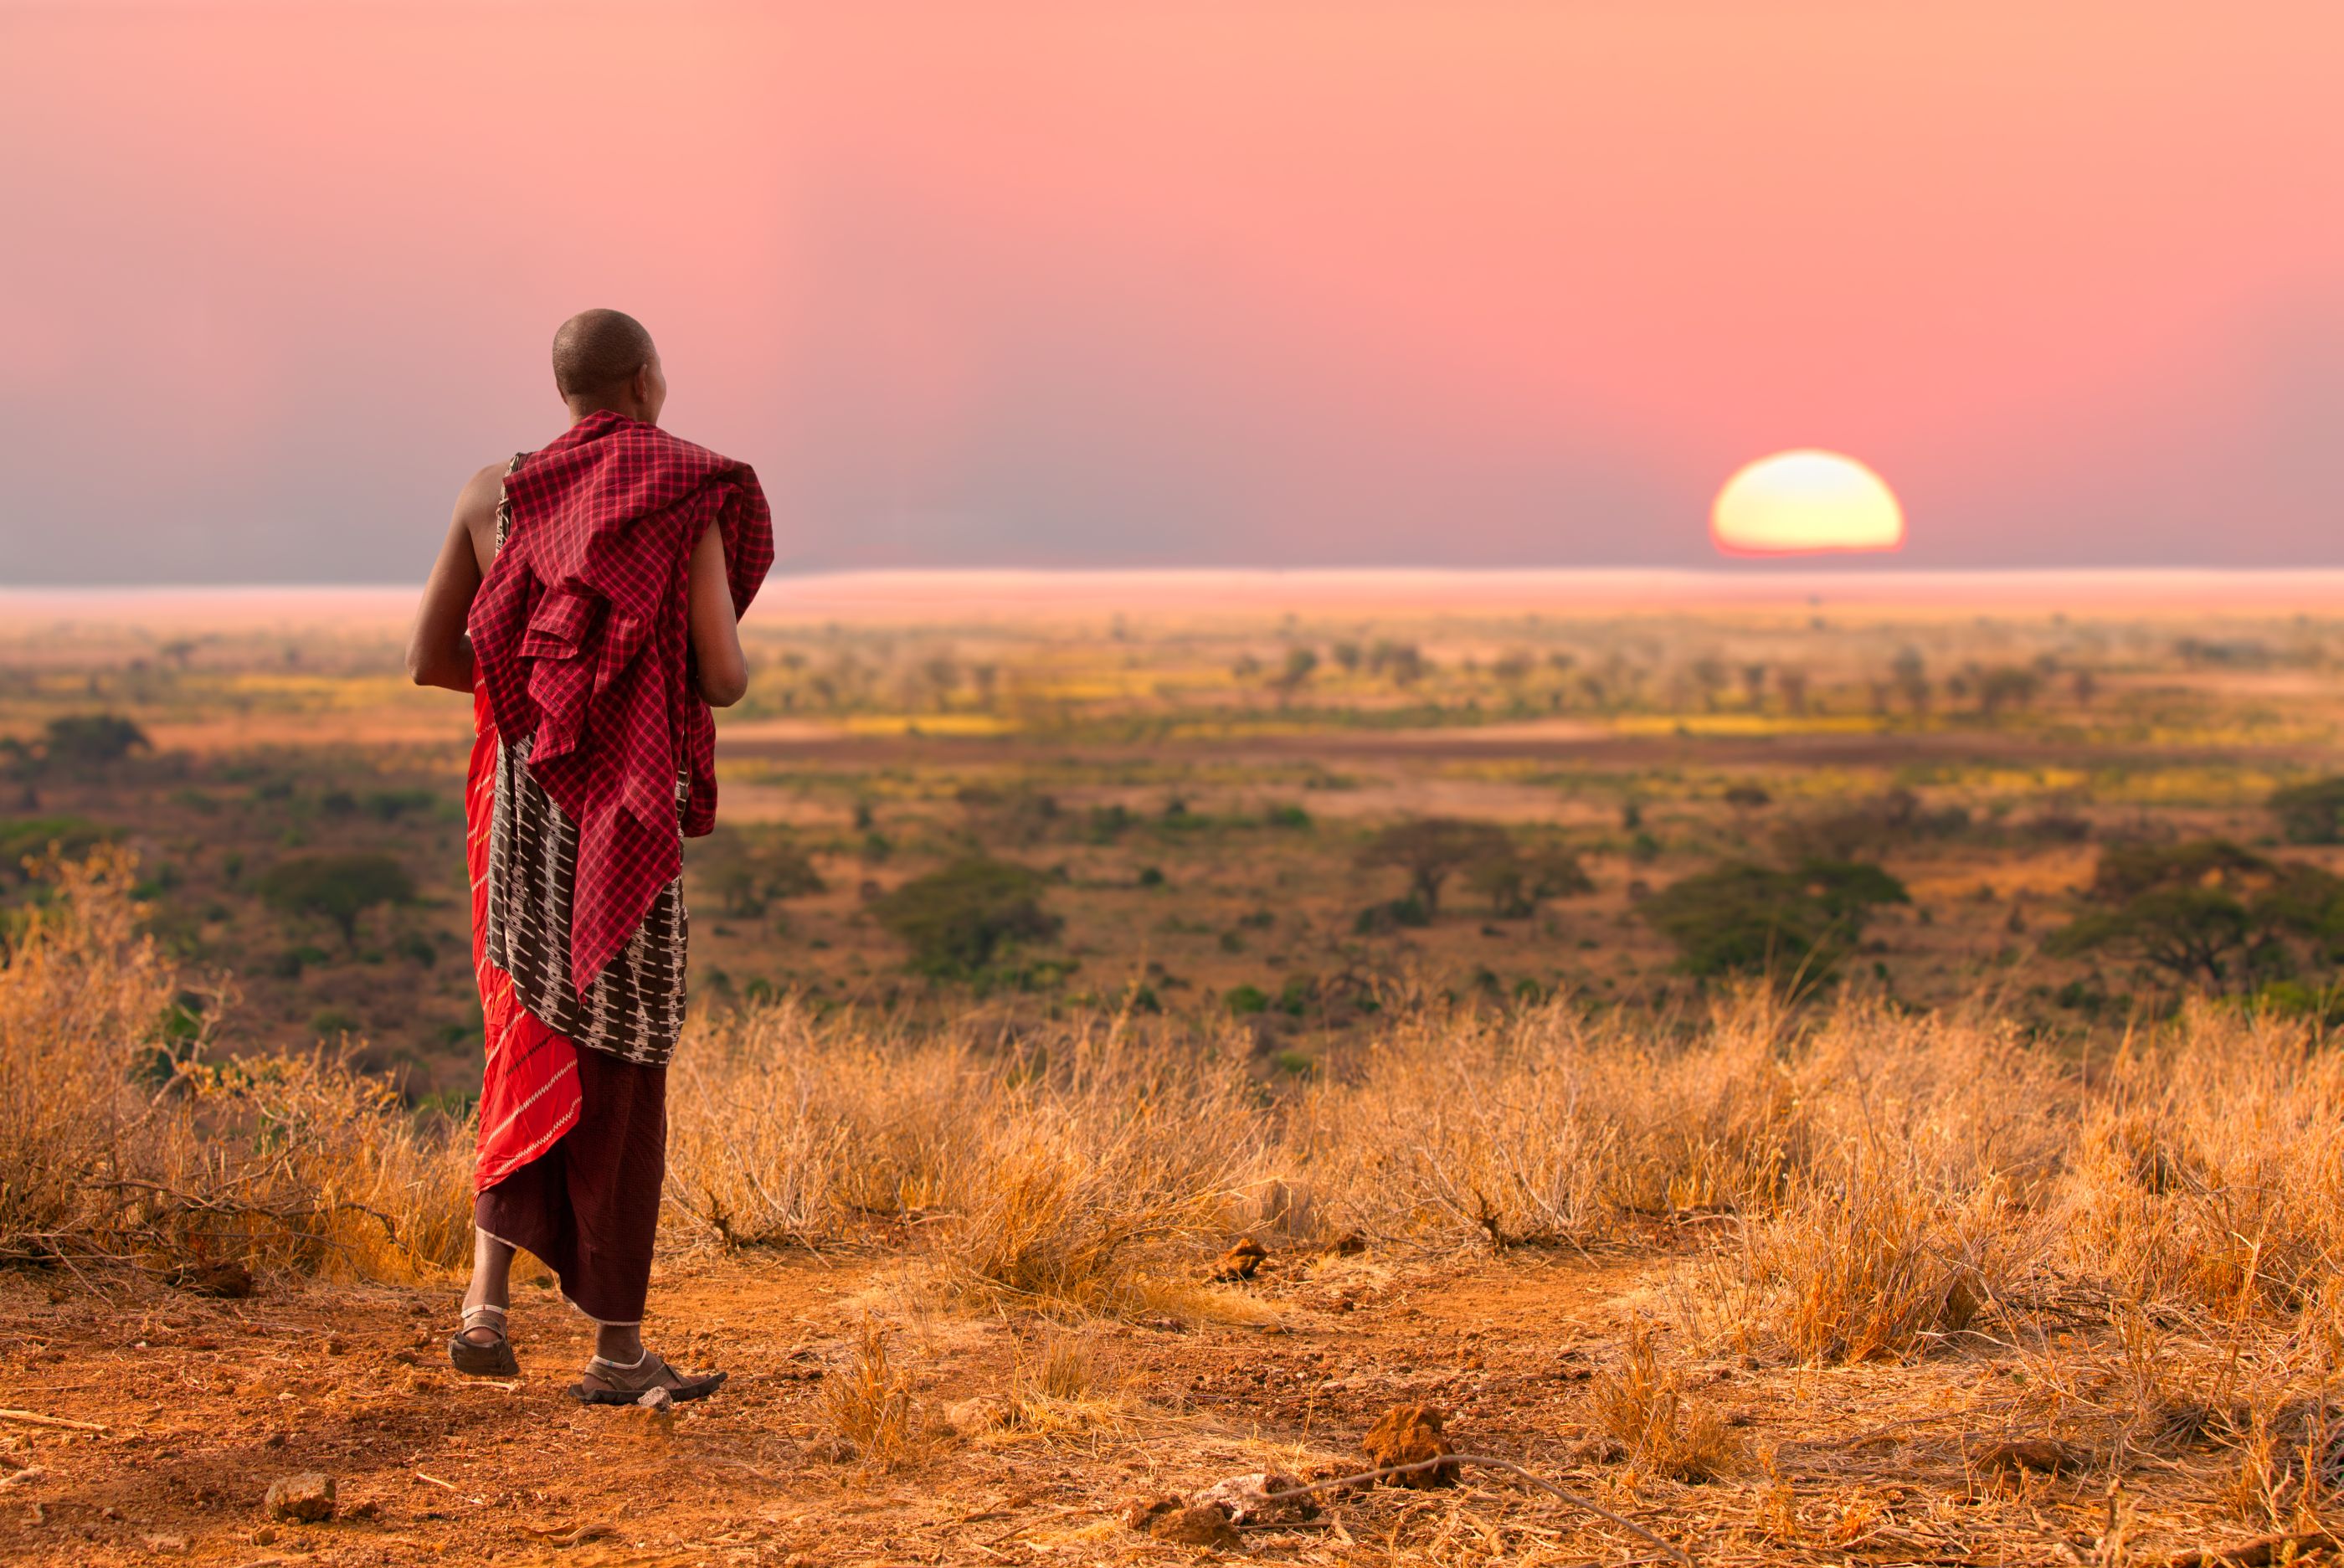 Masai warrior in Kenya